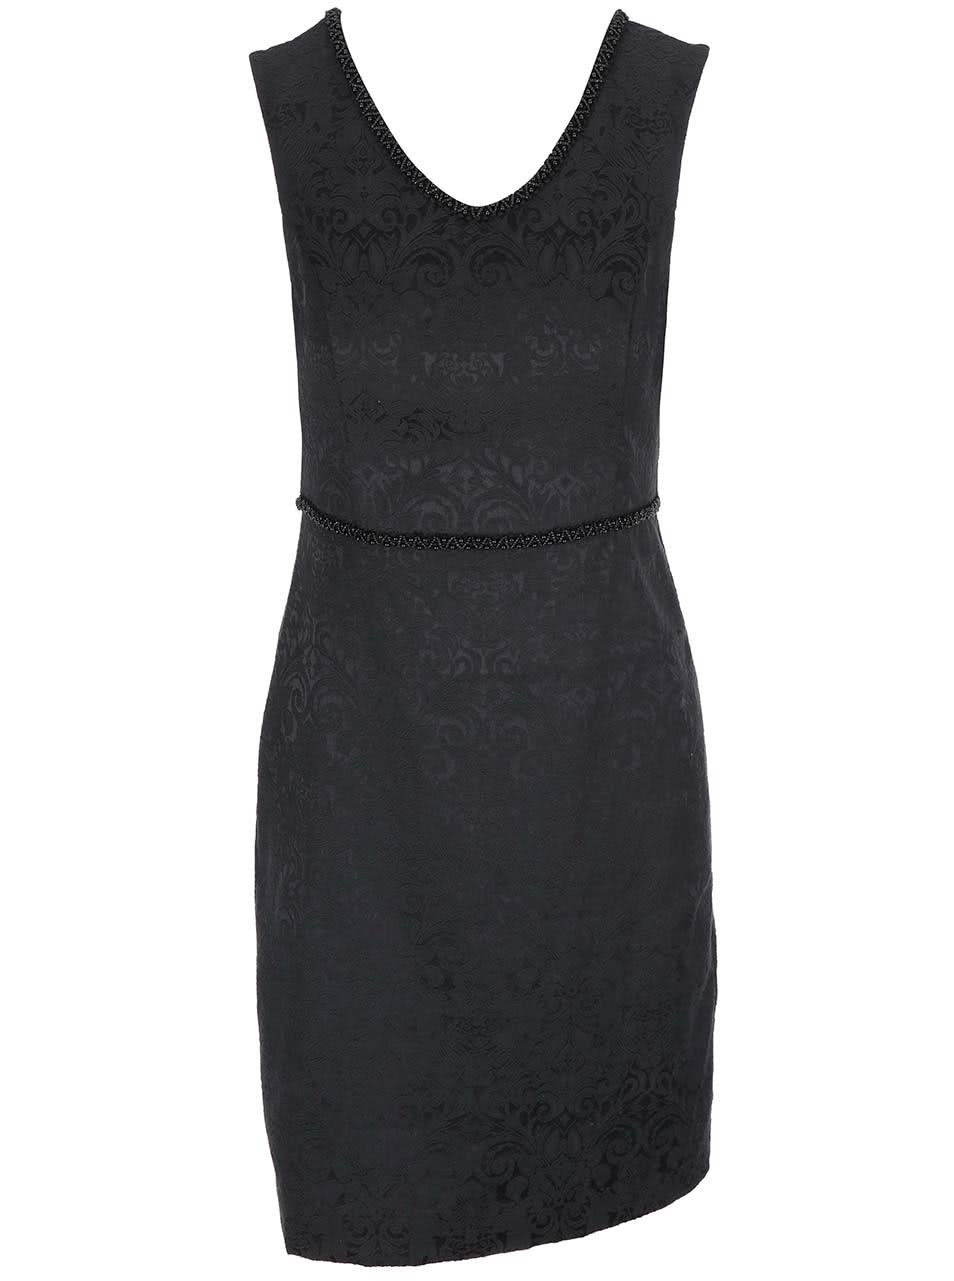 Černé vzorované šaty s korálkovým pasem Fever London